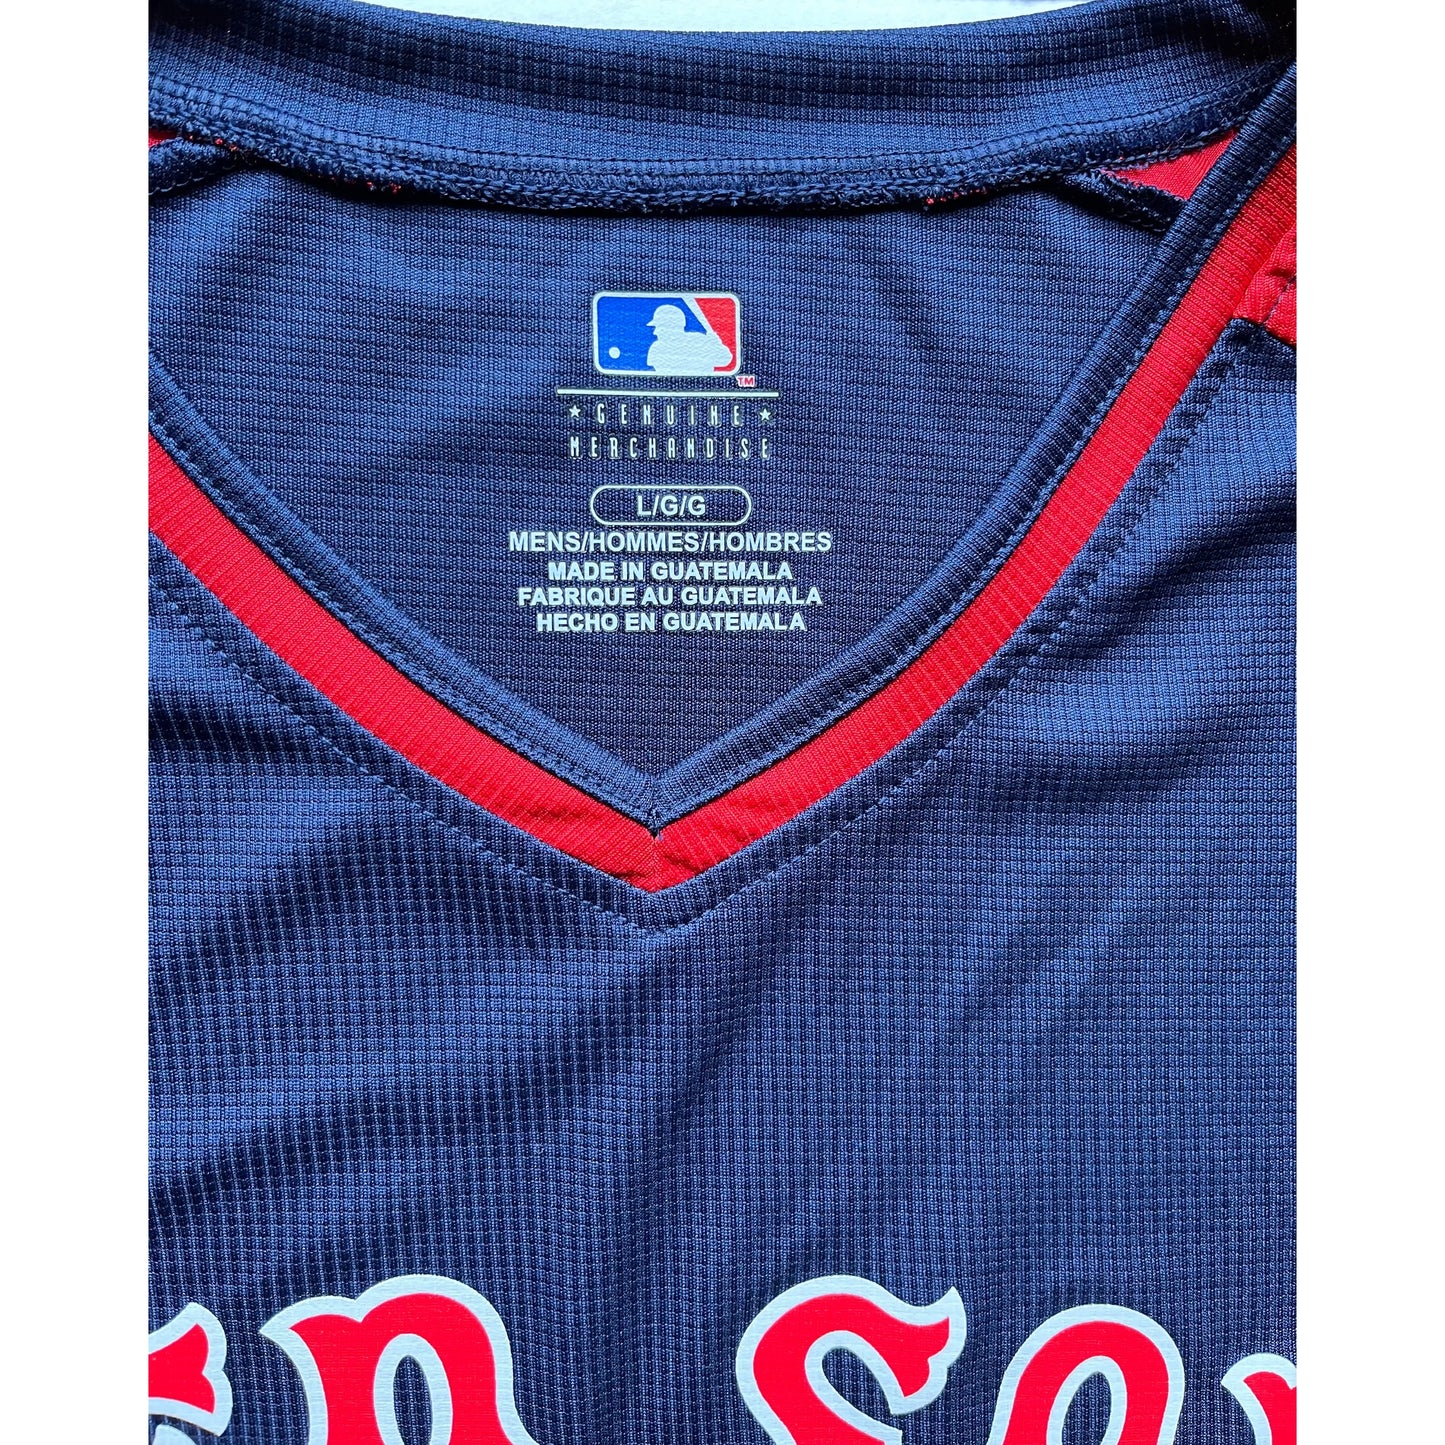 Boston Red Sox - MLB - MLB Tee (Large)